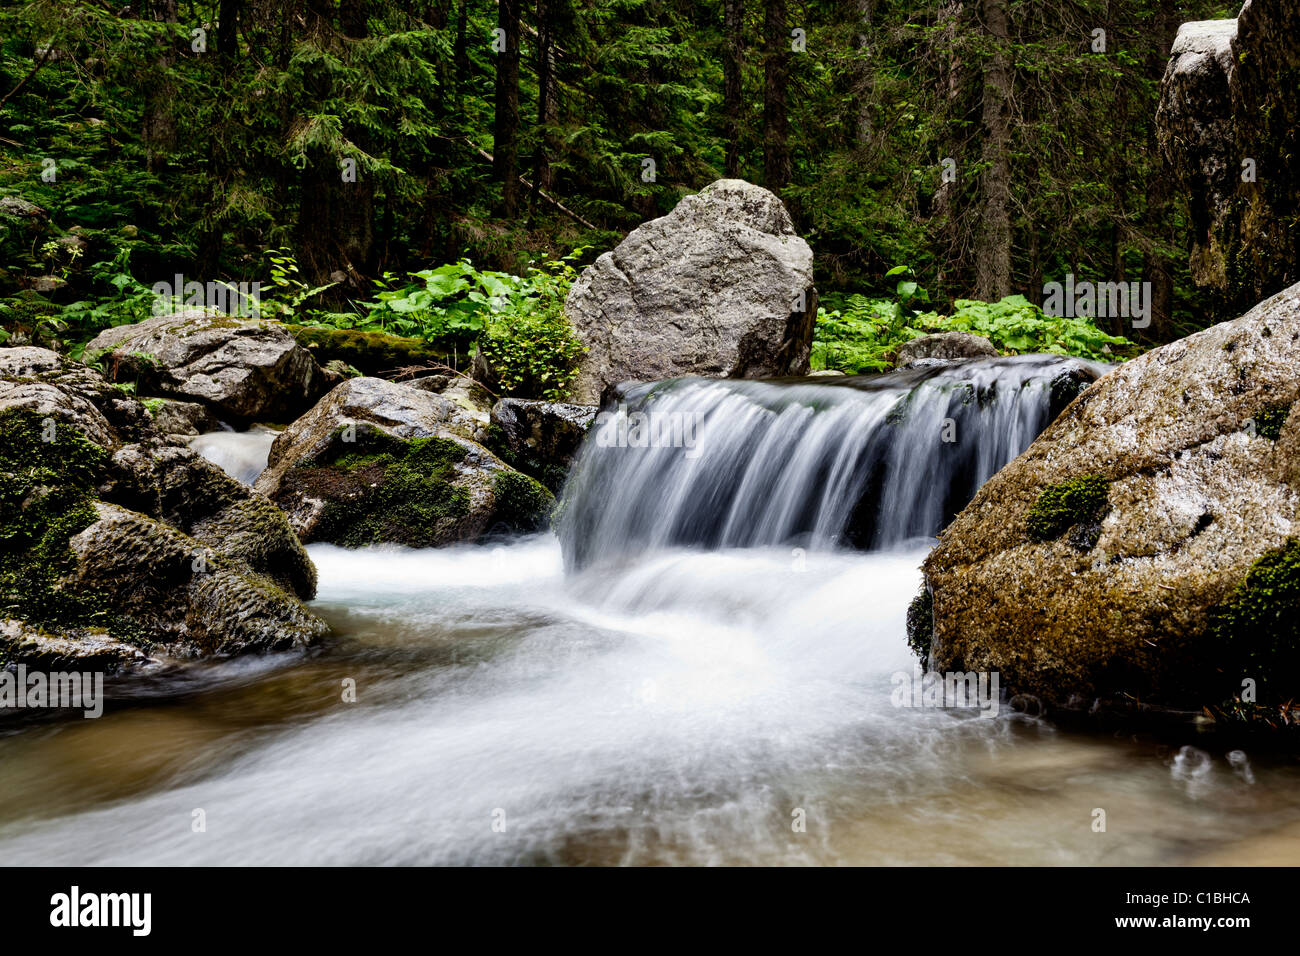 Peaceful mountain stream flows through lush forest Stock Photo